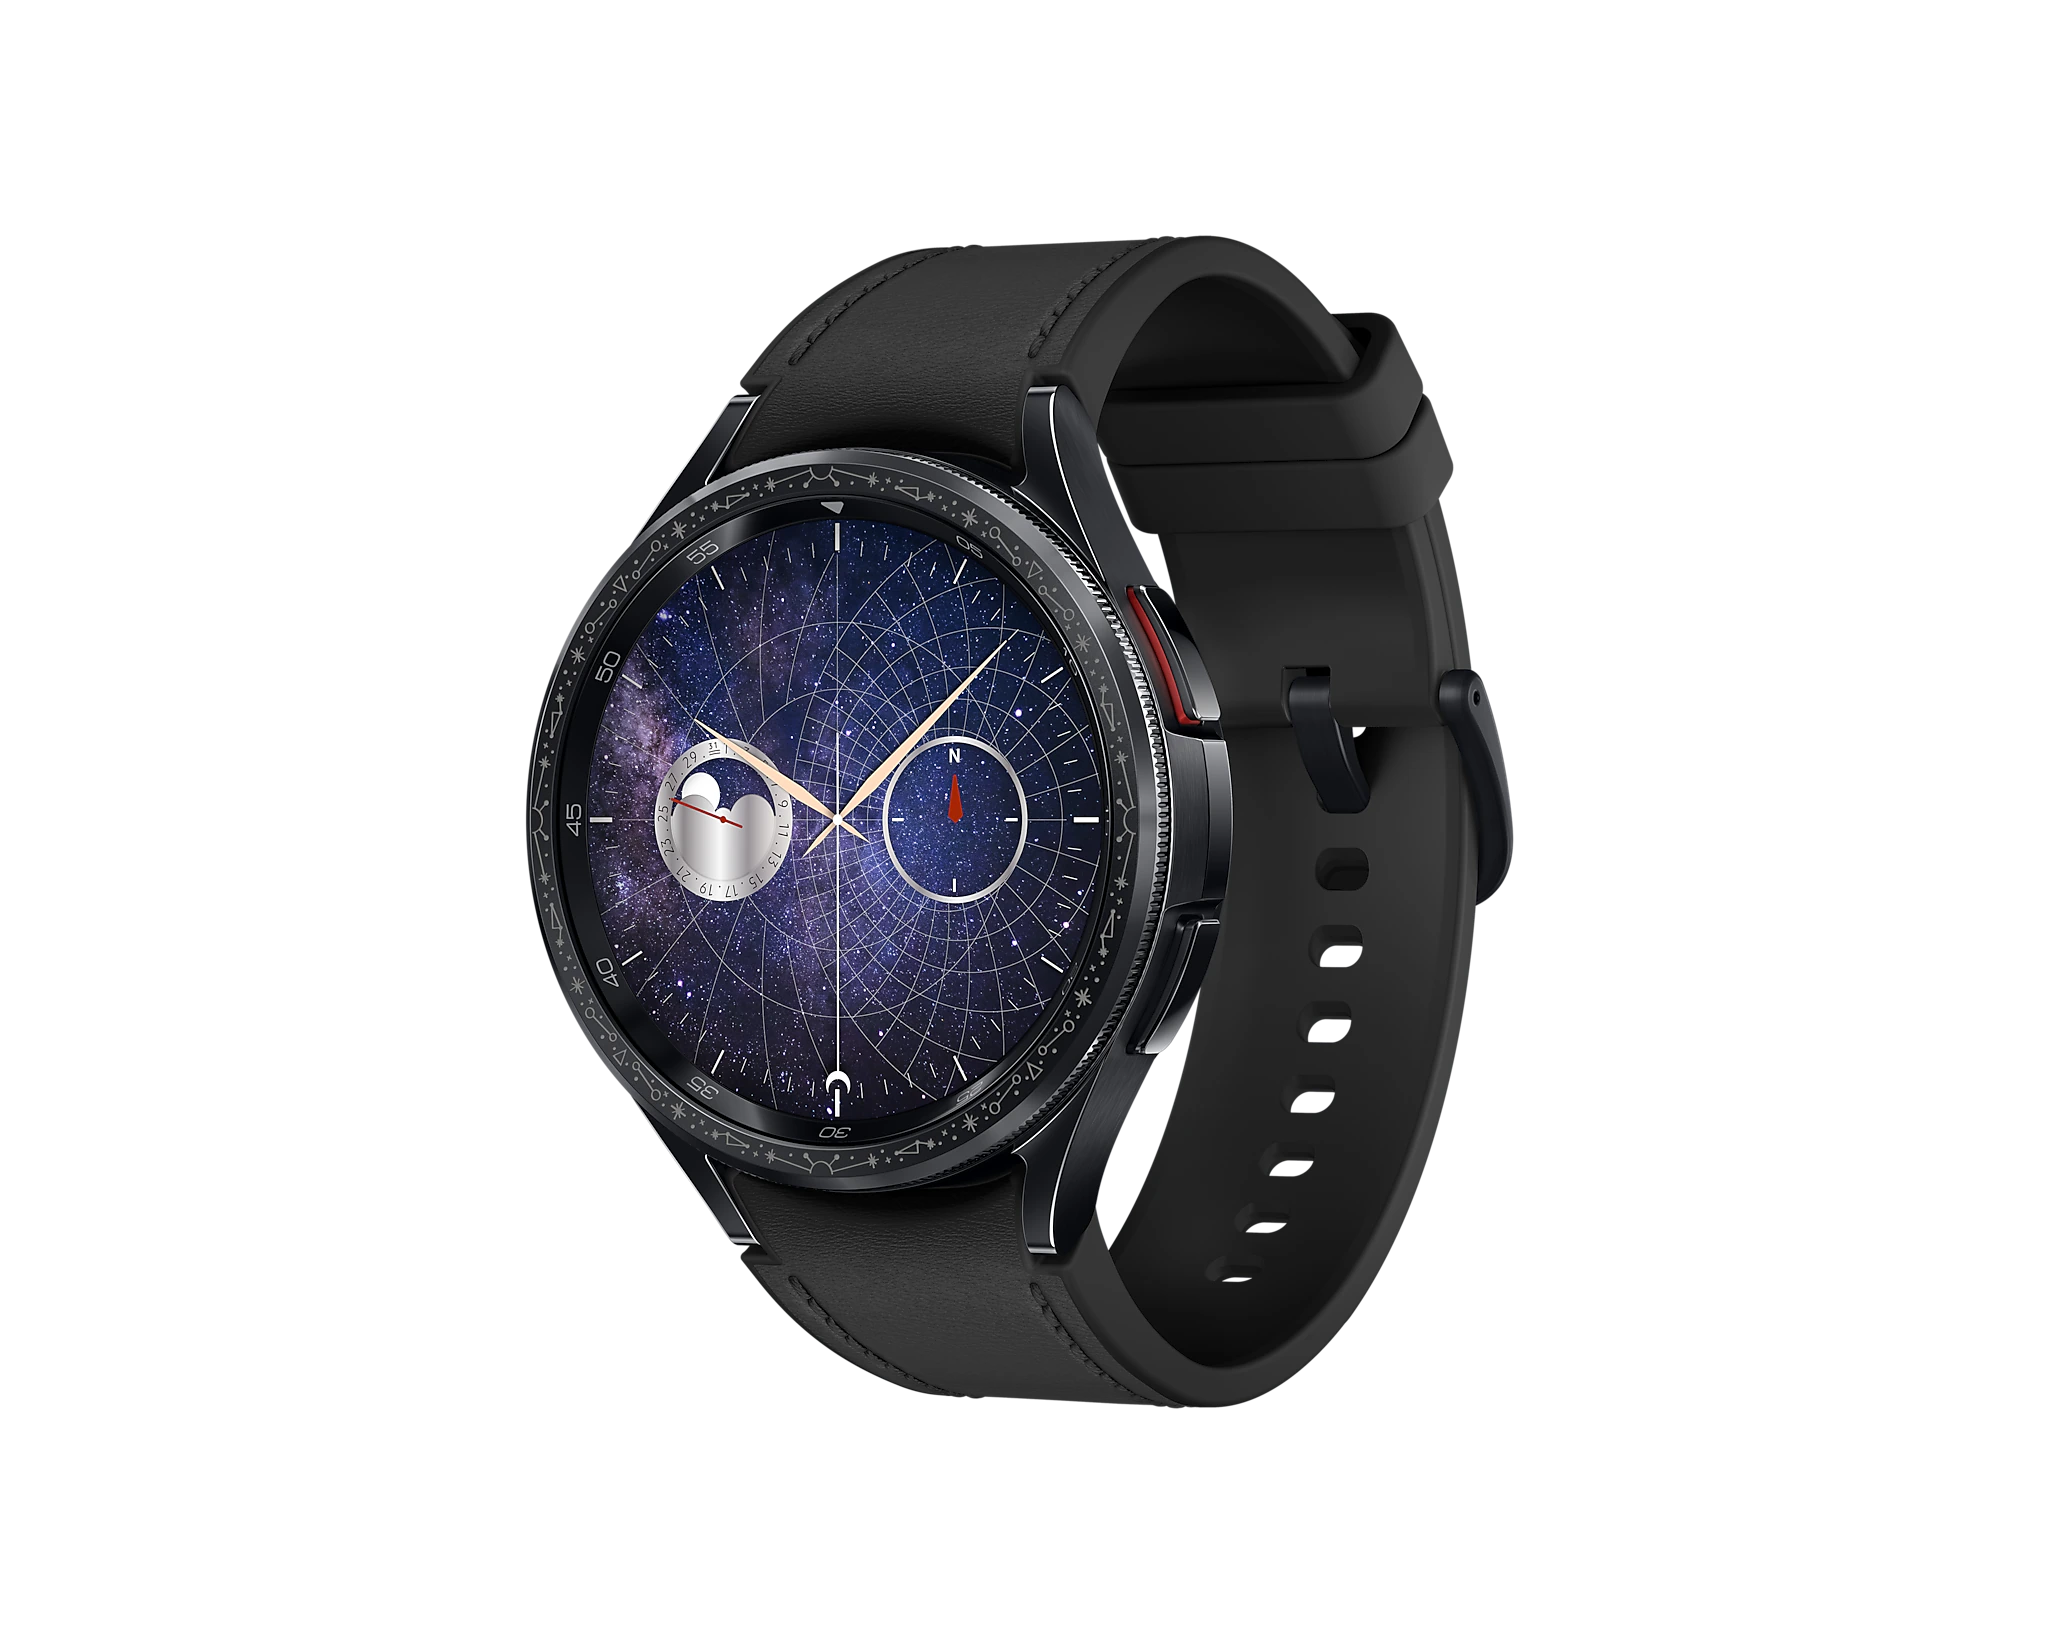 SAMSUNG Galaxy Watch 6 BT 44mm : : Electrónica